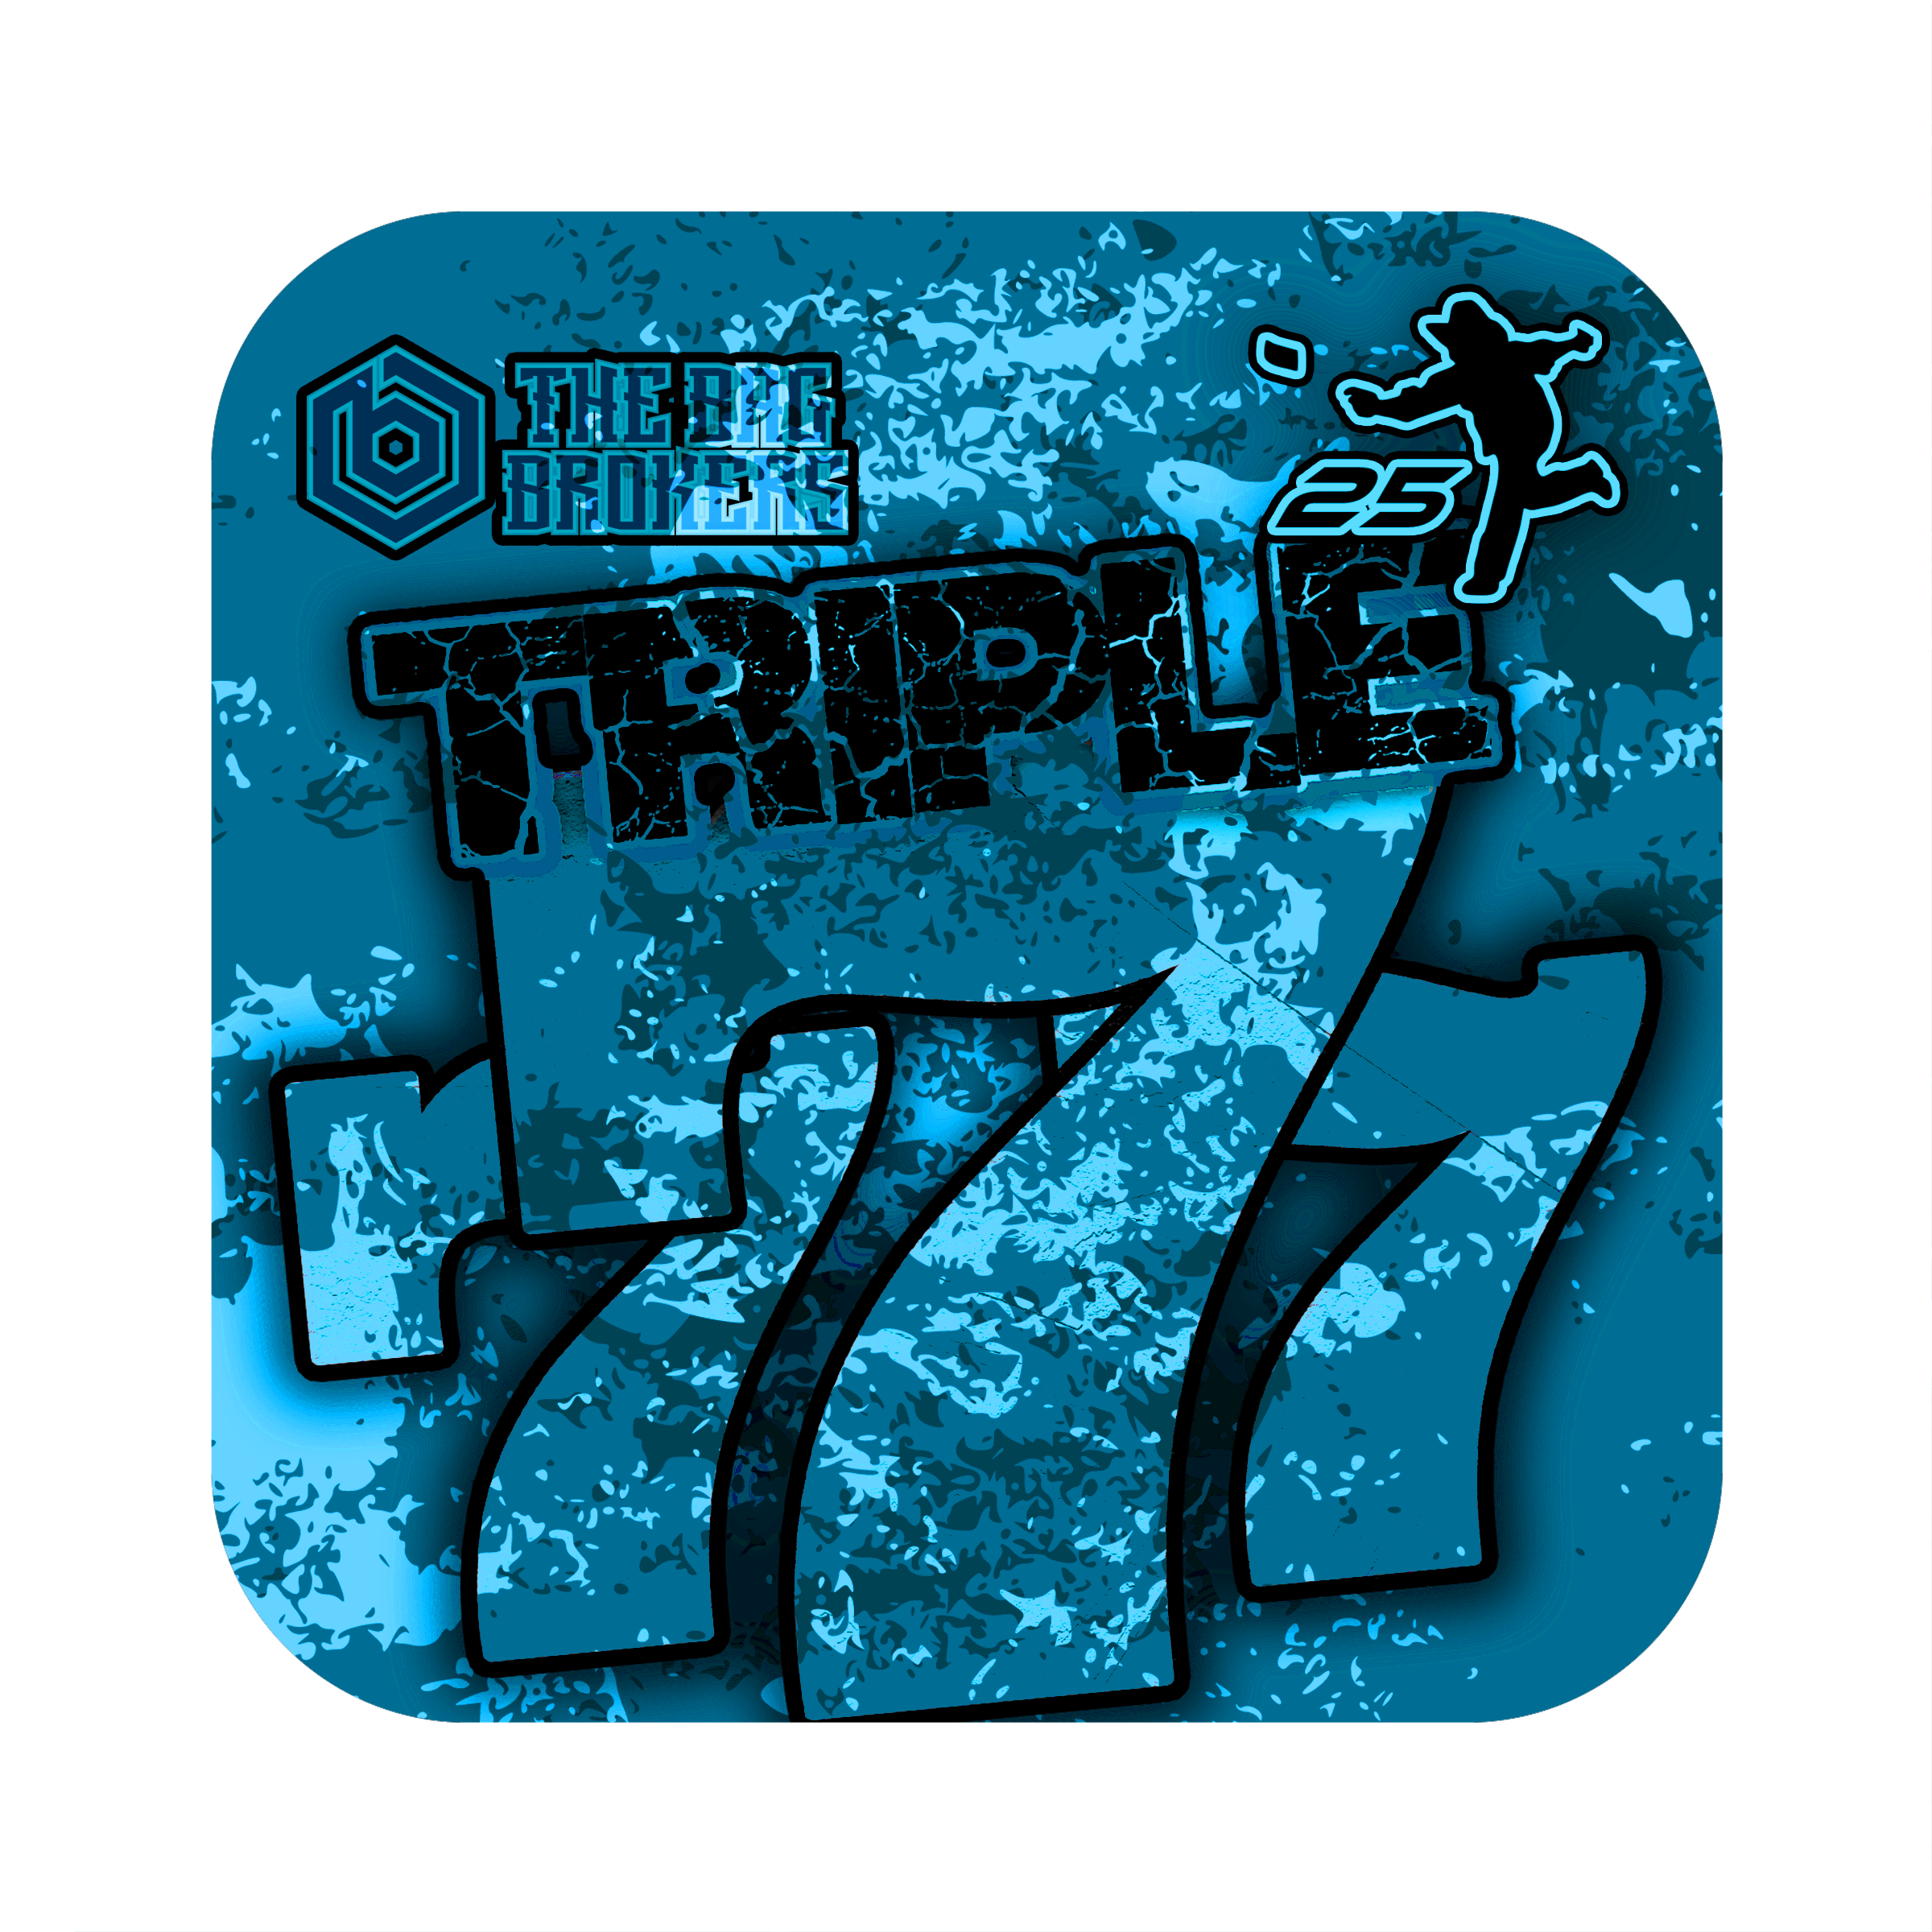 Triple 7